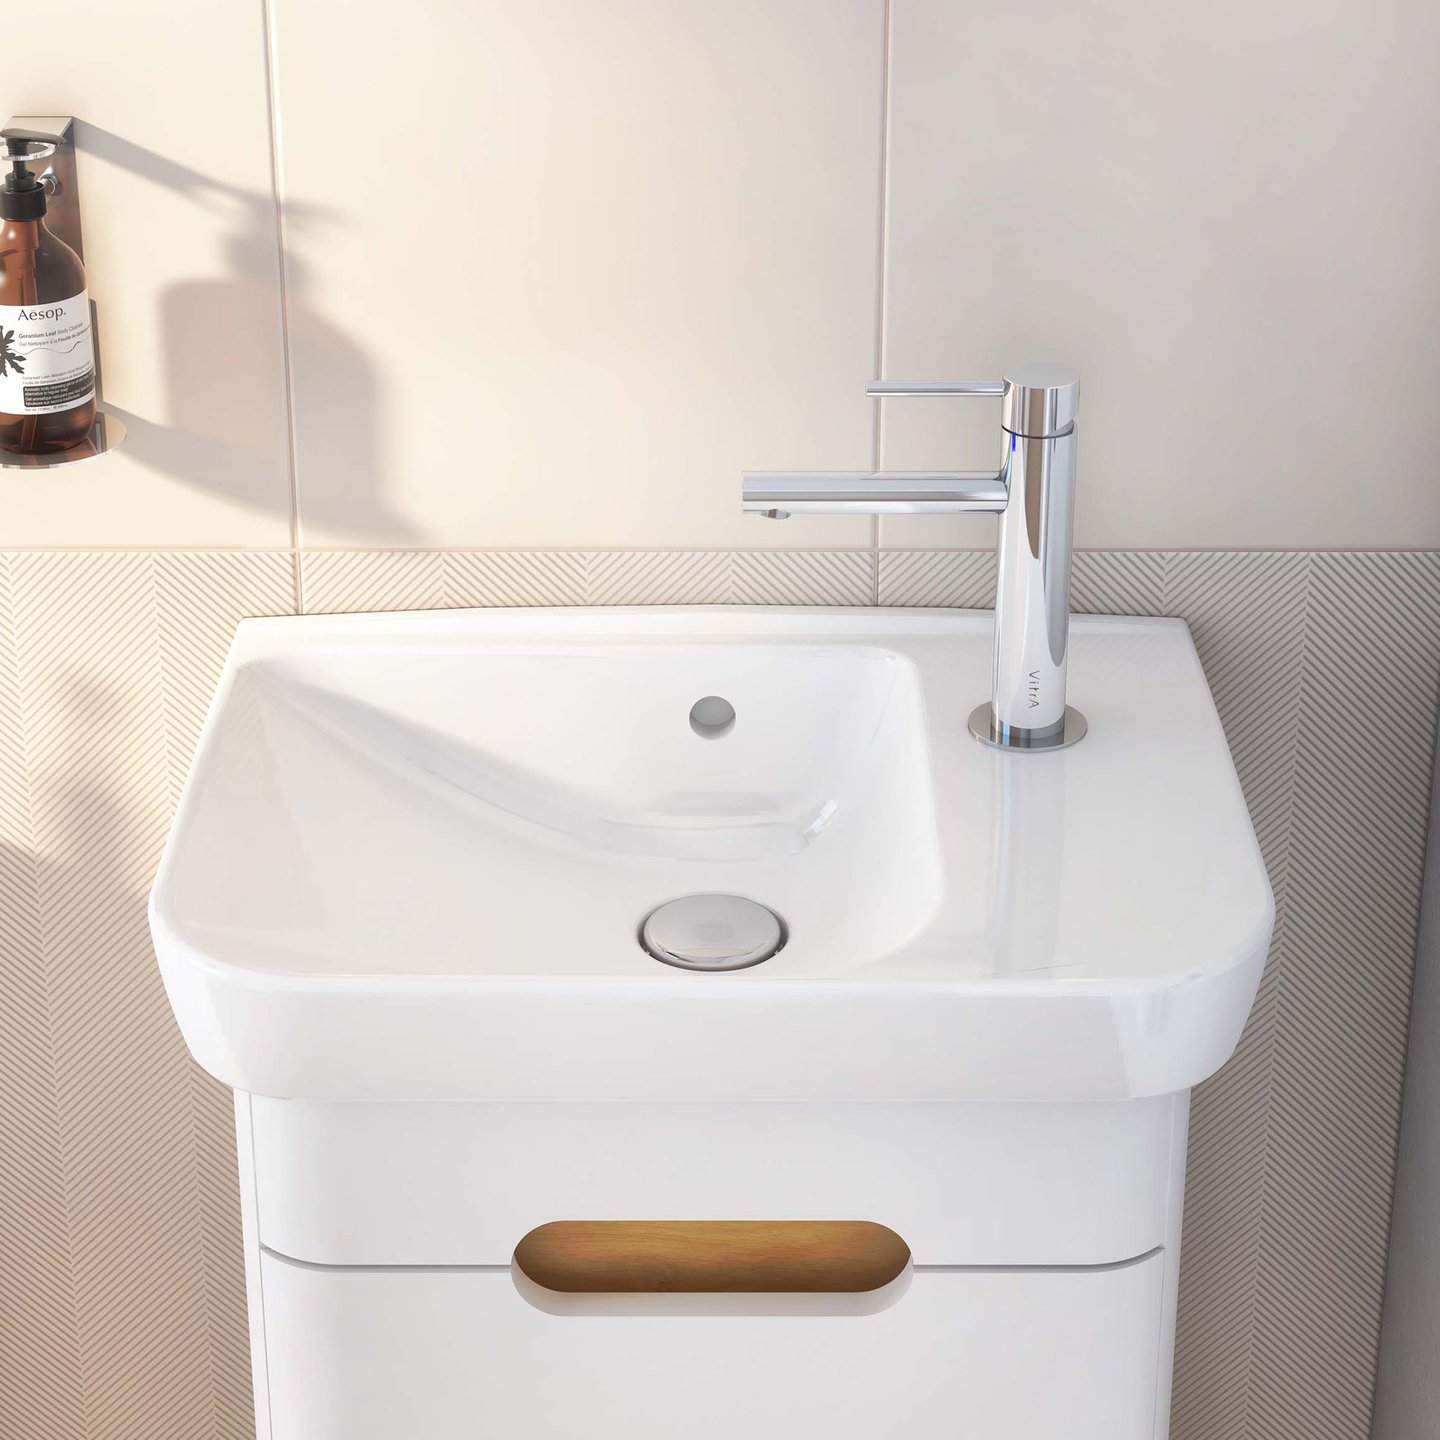 VitrA Sento hand washbasin white, ungrounded - 5945B003-0029 | REUTER